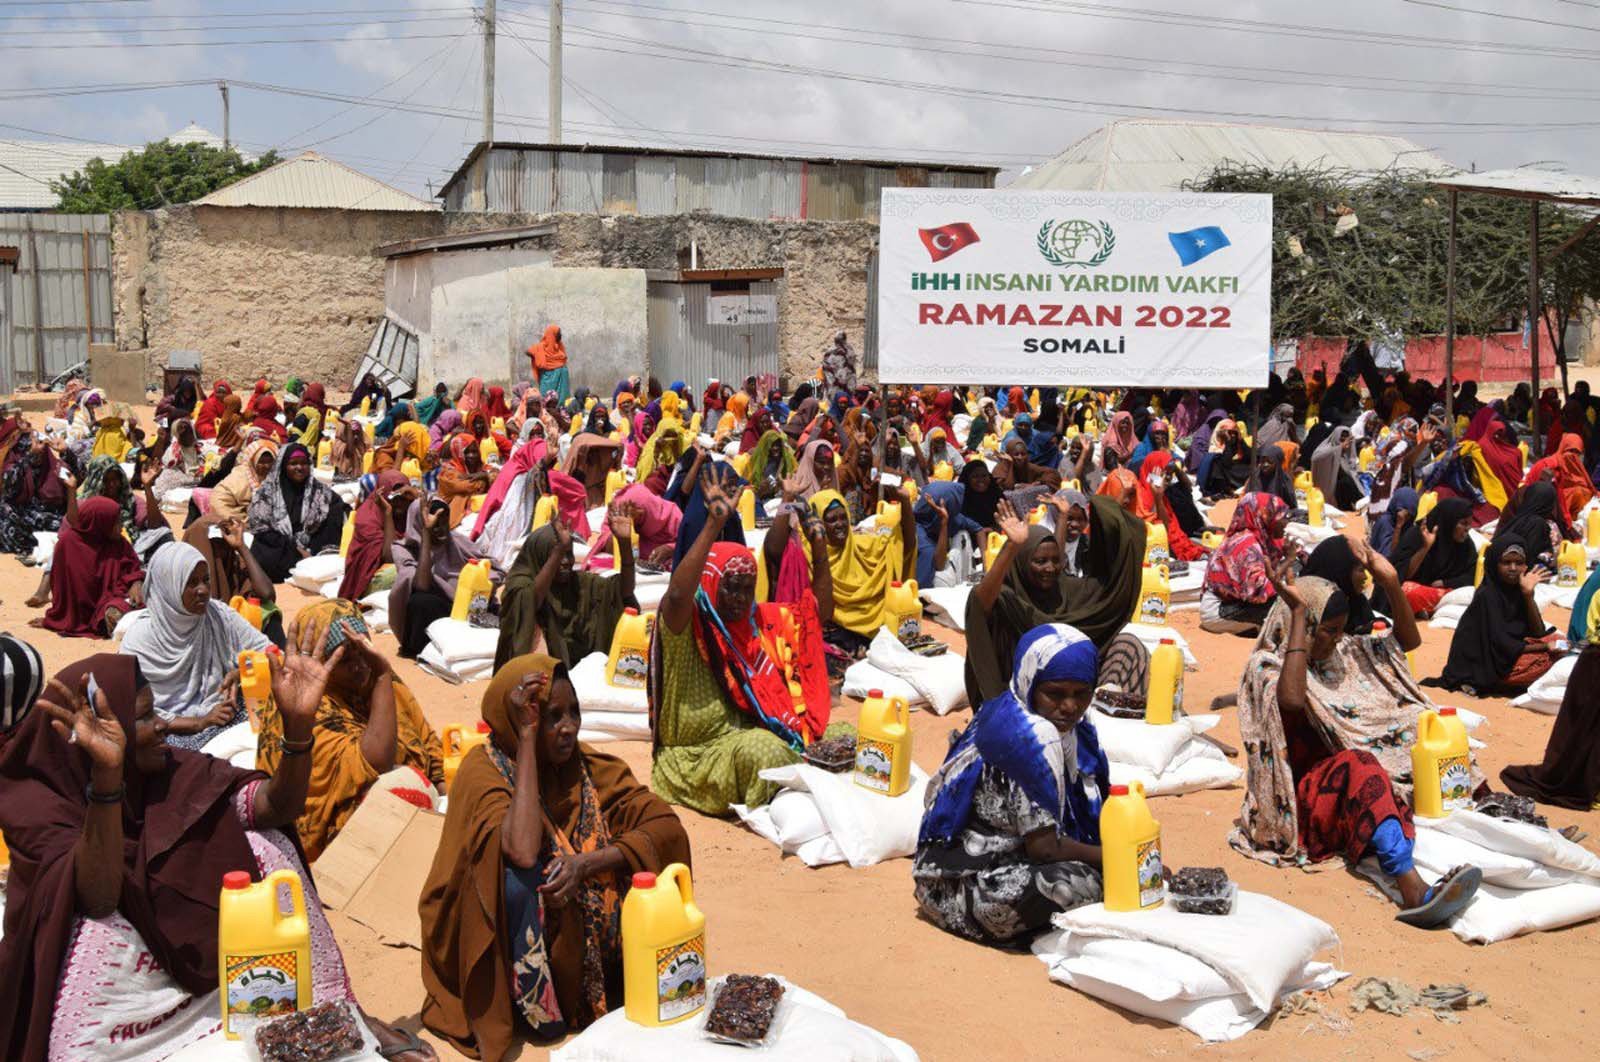 Bantuan kemanusiaan Turki menjangkau Somalia yang dilanda kekeringan